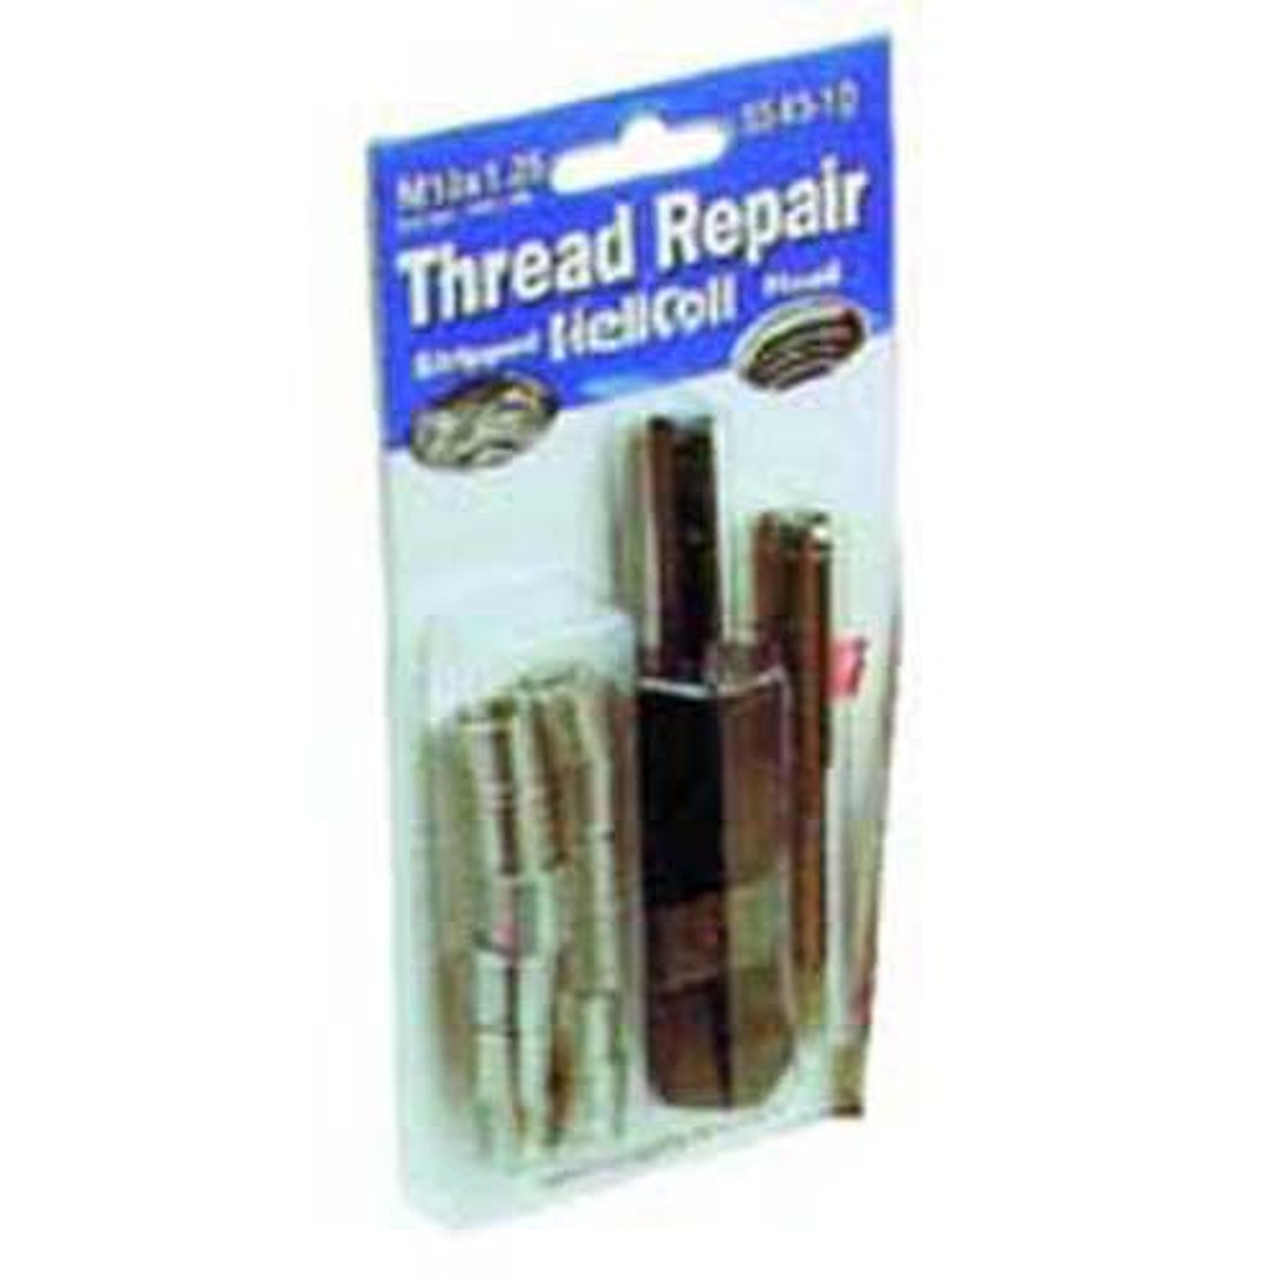 Helicoil 5546-10 Thread Repair Kit, 10mm x 1.50 NC